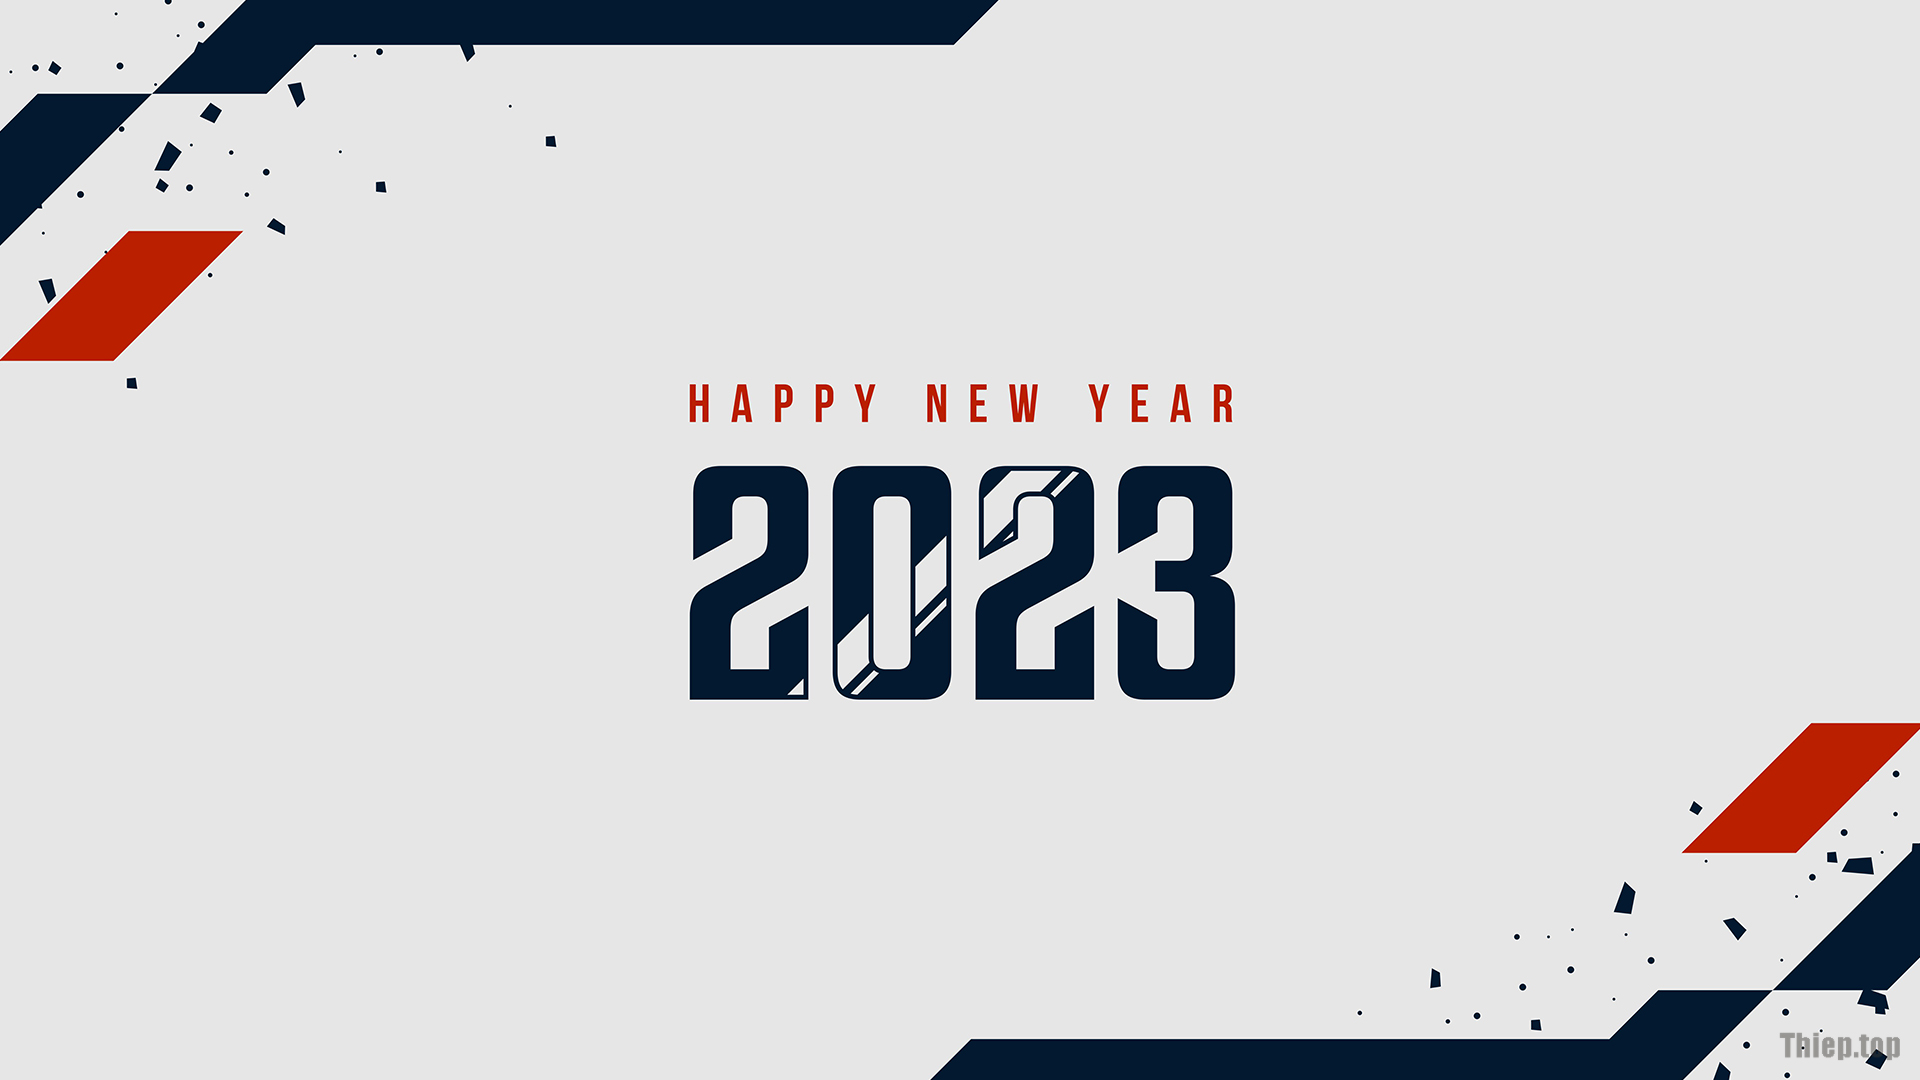 Top Hình nền chúc mừng năm mới 2023 Full HD Tải miễn phí - Hình 5